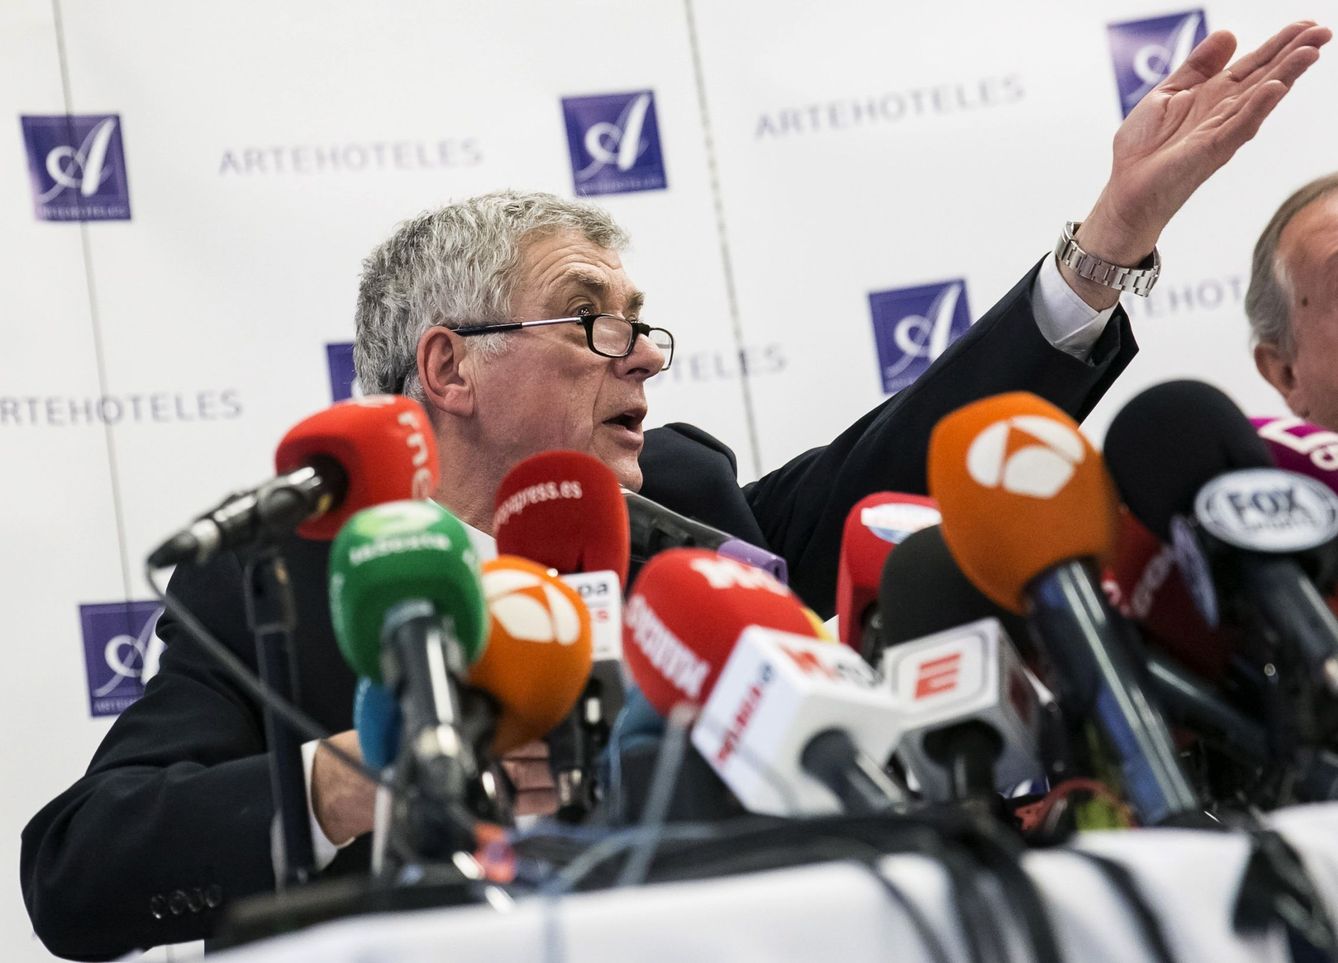 Villar gesticuló constantemente durante la rueda de prensa. (EFE)